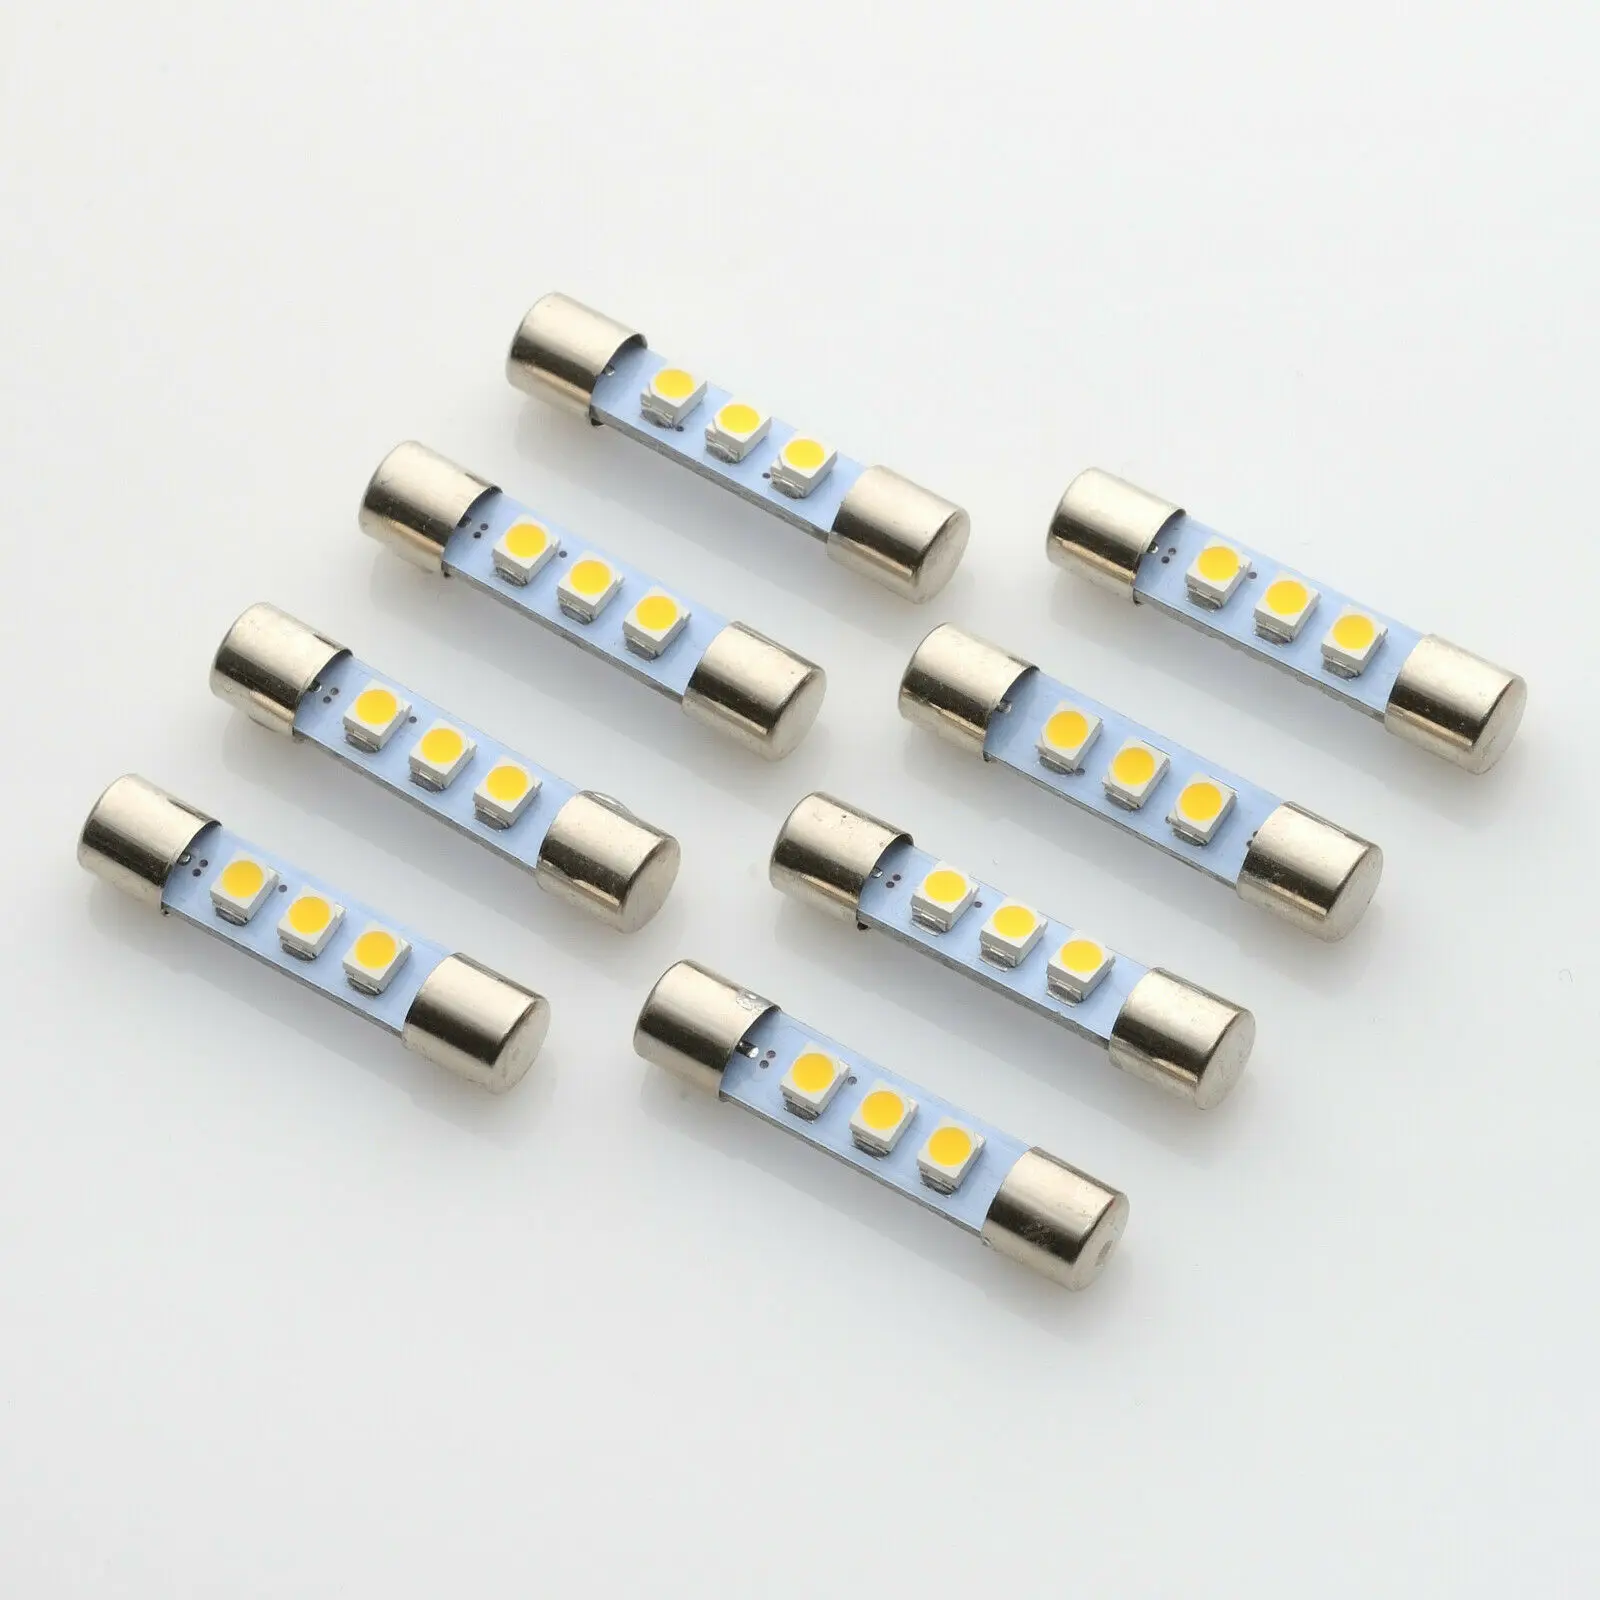 8 جديد AC8V LED الصمامات مصابيح استبدال 8 فولت 250mA المتوهجة المصابيح صالح على مارانتز ، بايونير ، سانسوي وغيرها من مكبرات الصوت خمر